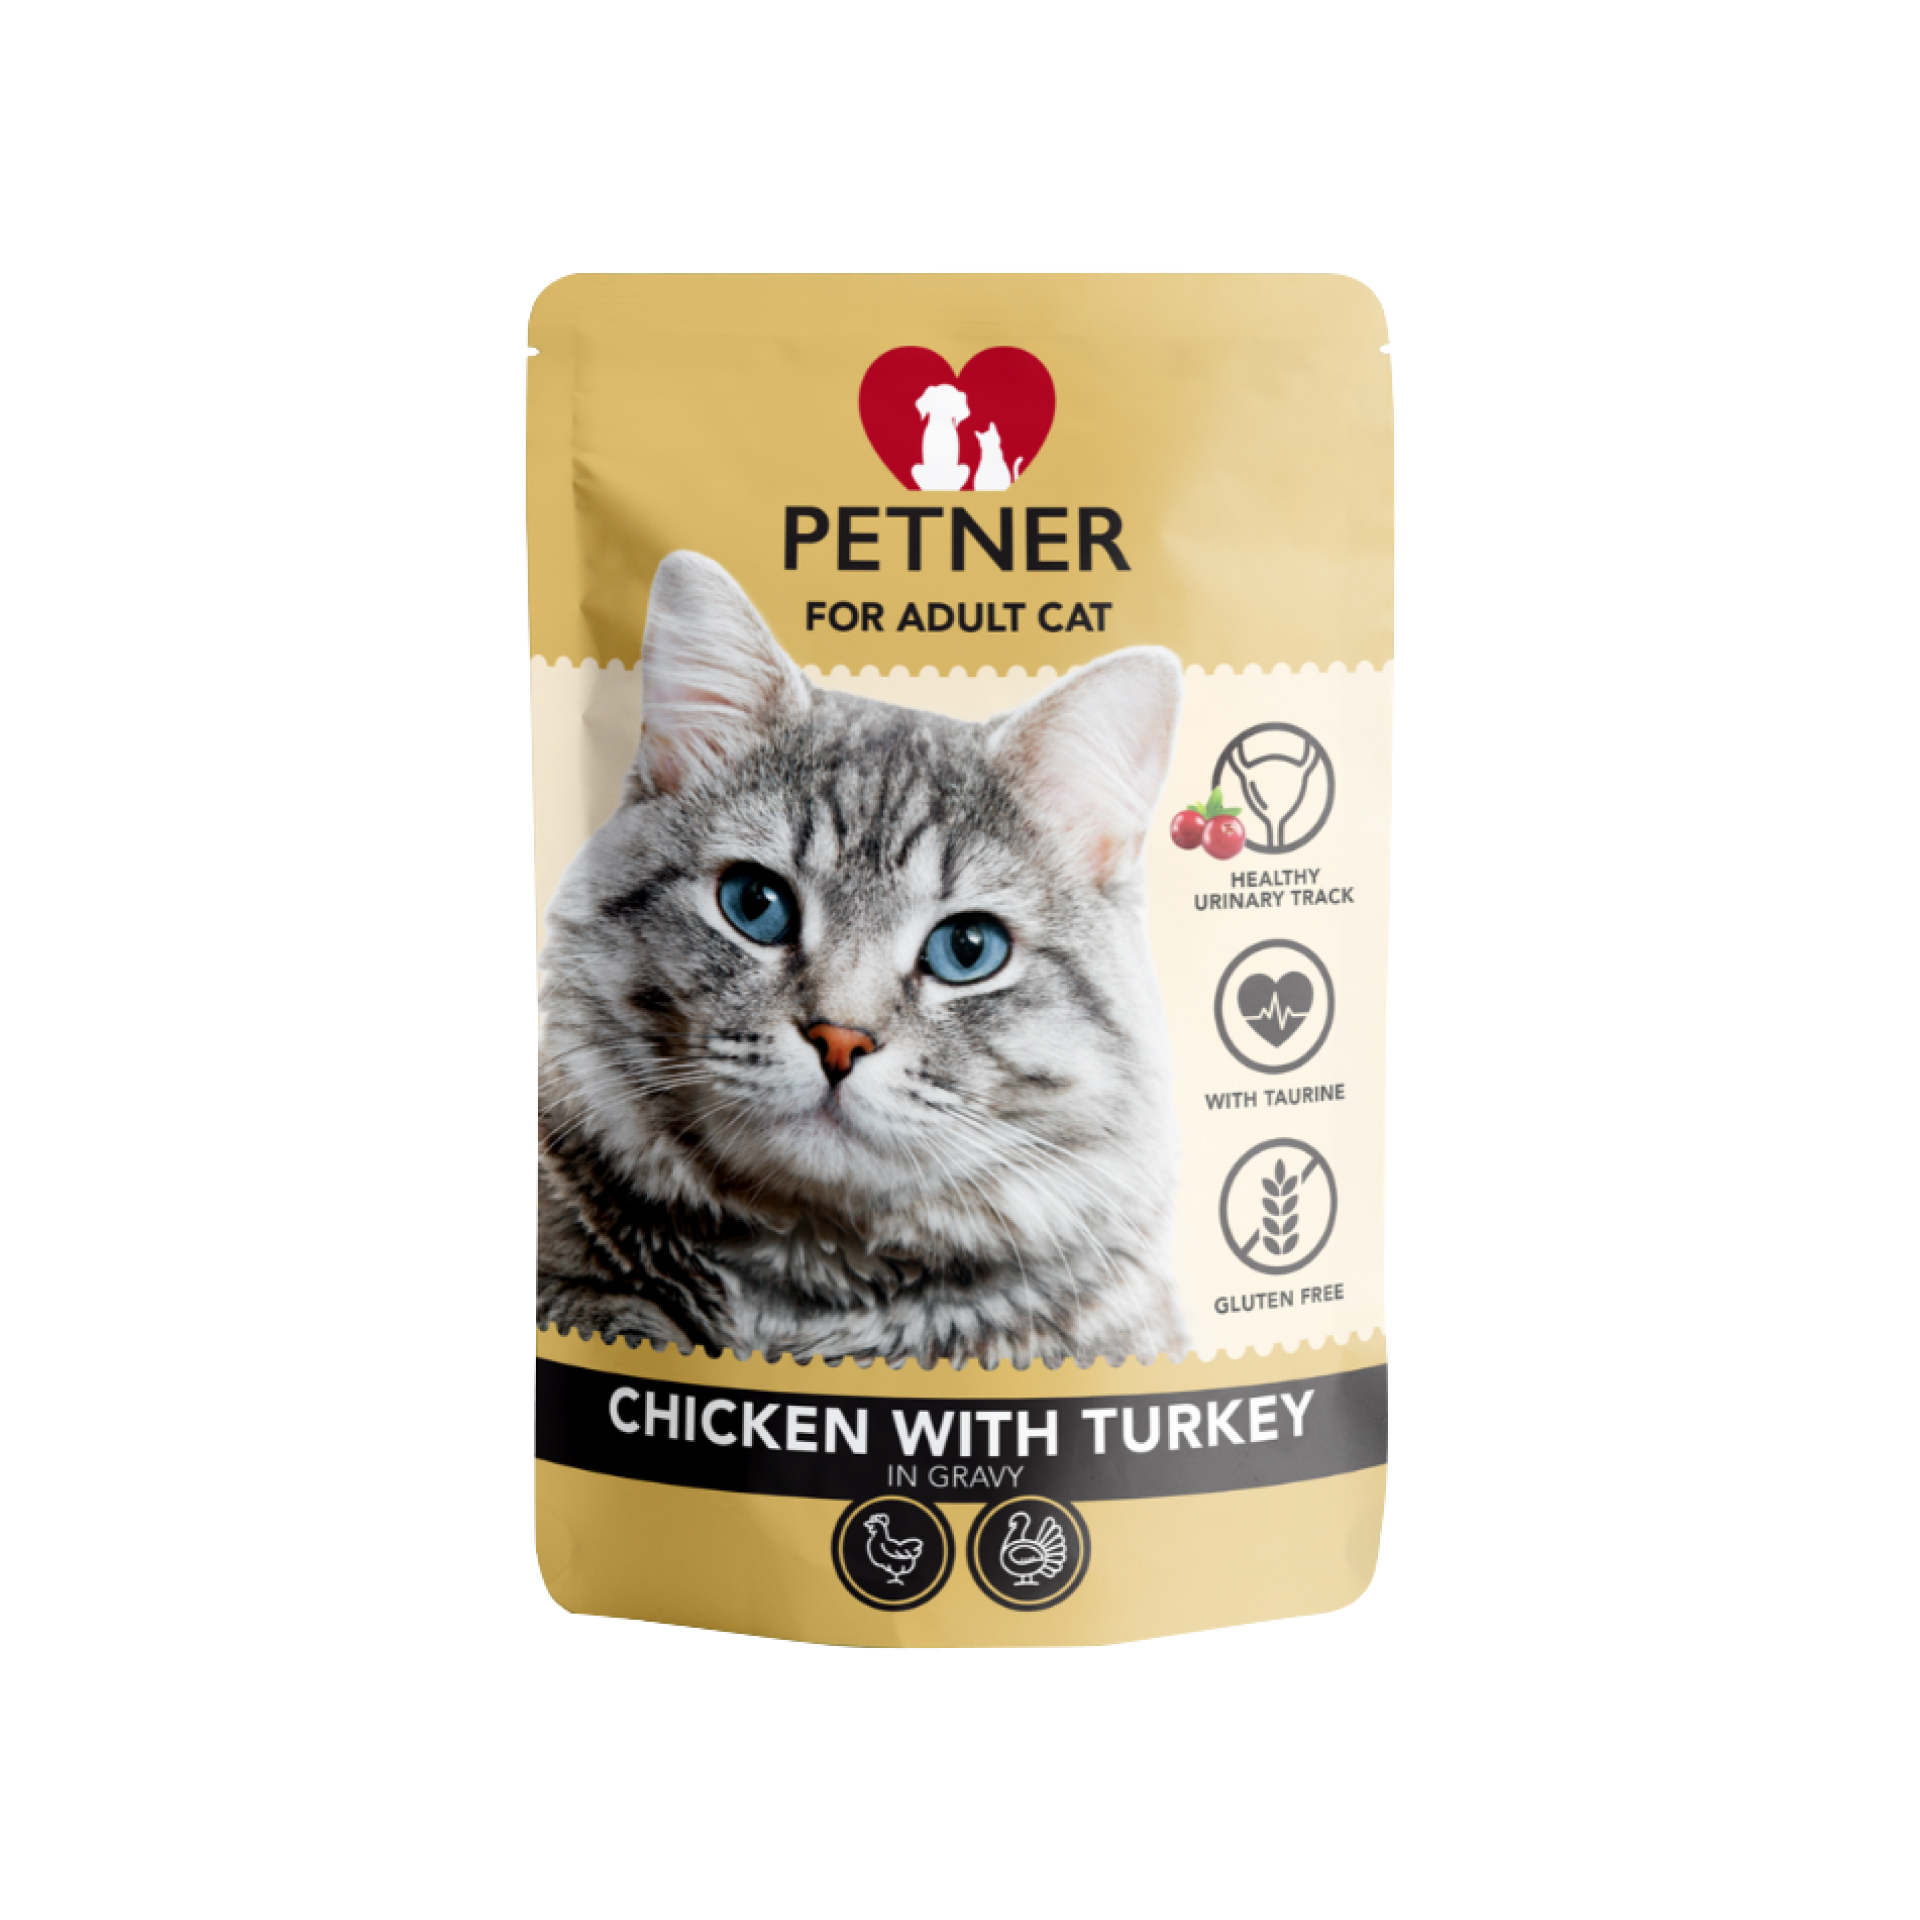 Petner Adult Cat chicken with turkey 85g